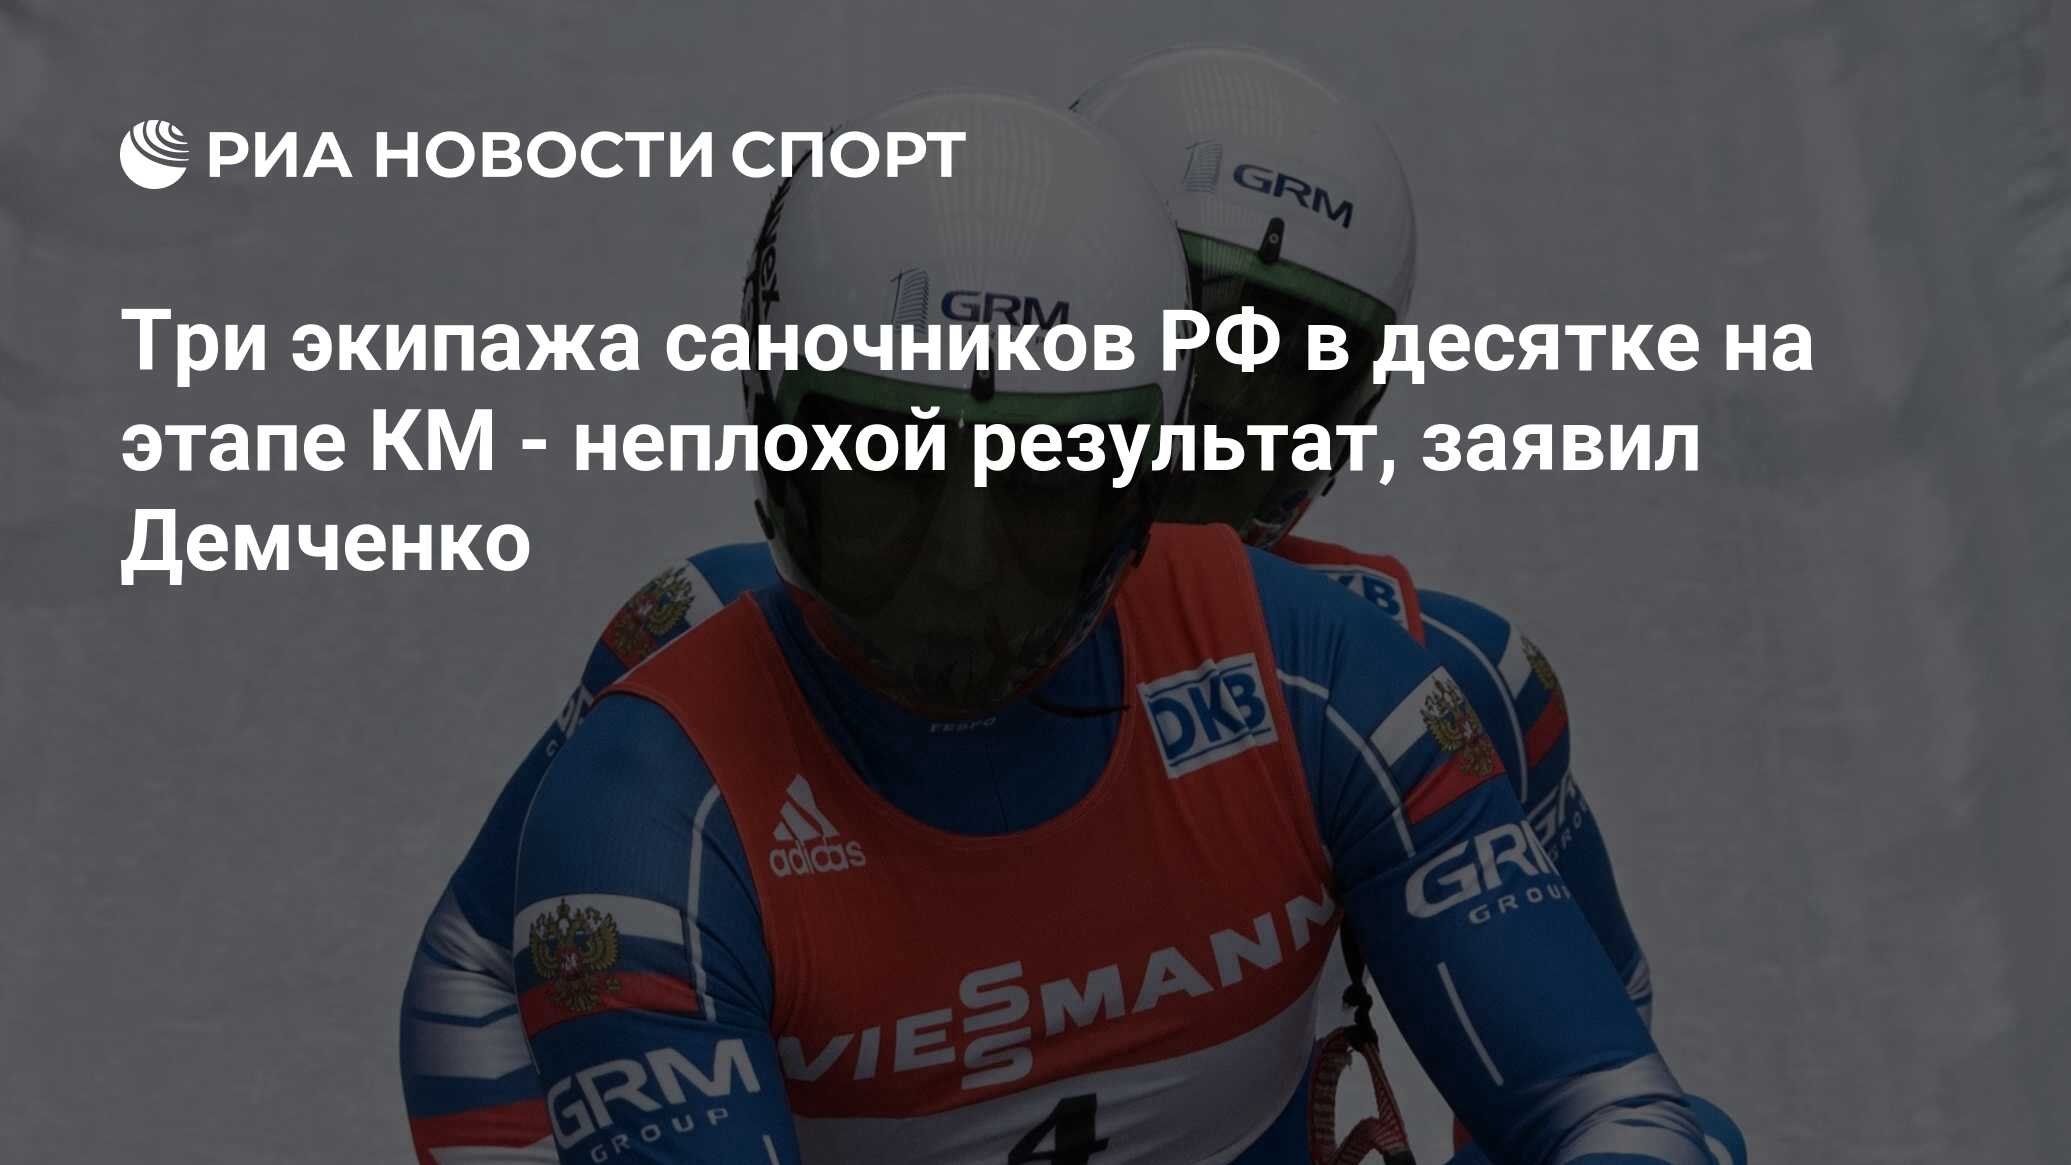 Демченко спортивный врач. Самый известный саночник в России.